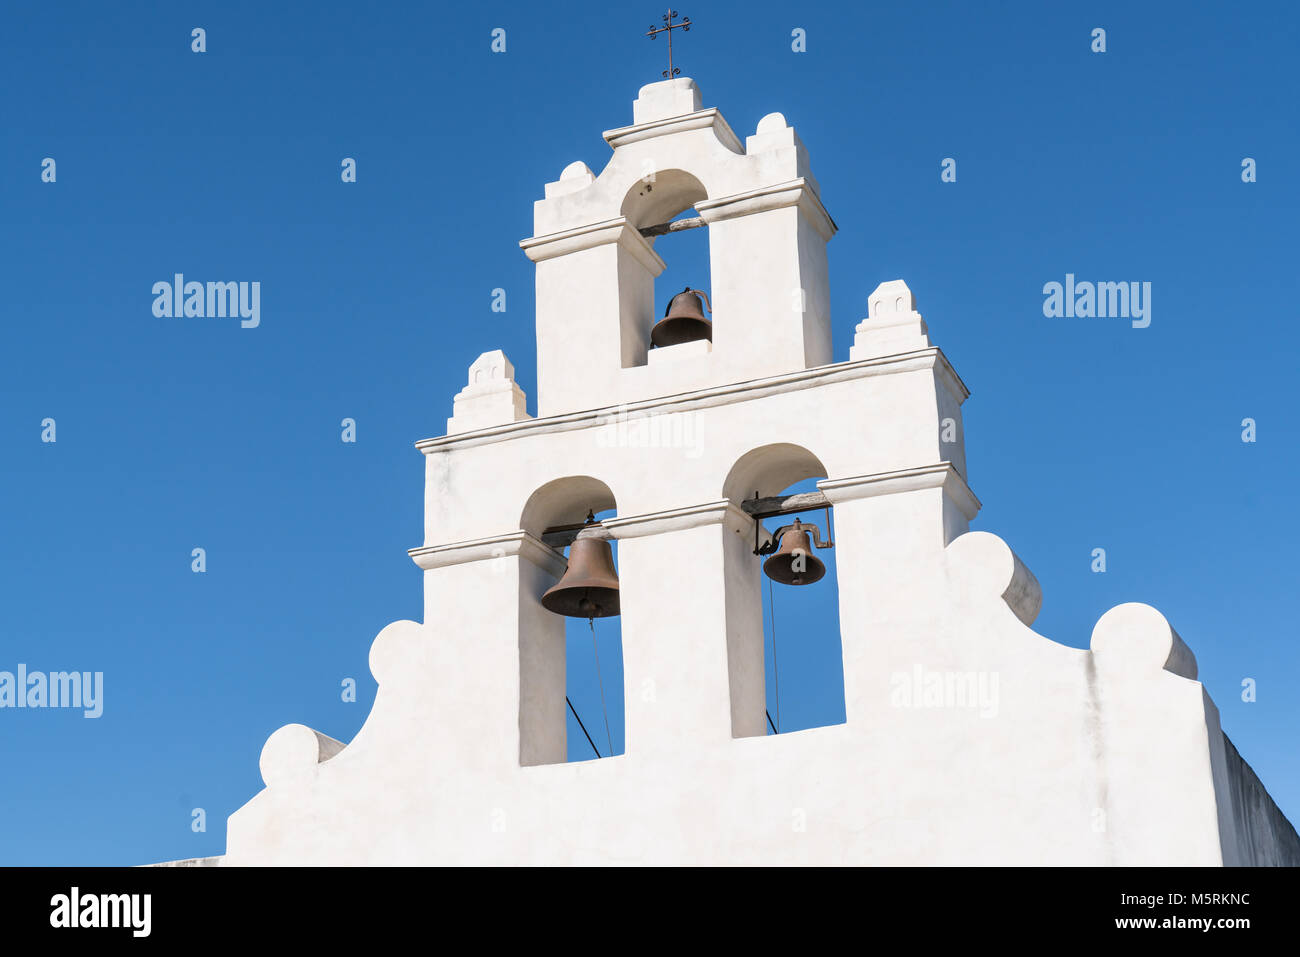 Les cloches de la Mission de la Mission de San Juan à San Antonio Missions National Historic Park, Texas Banque D'Images